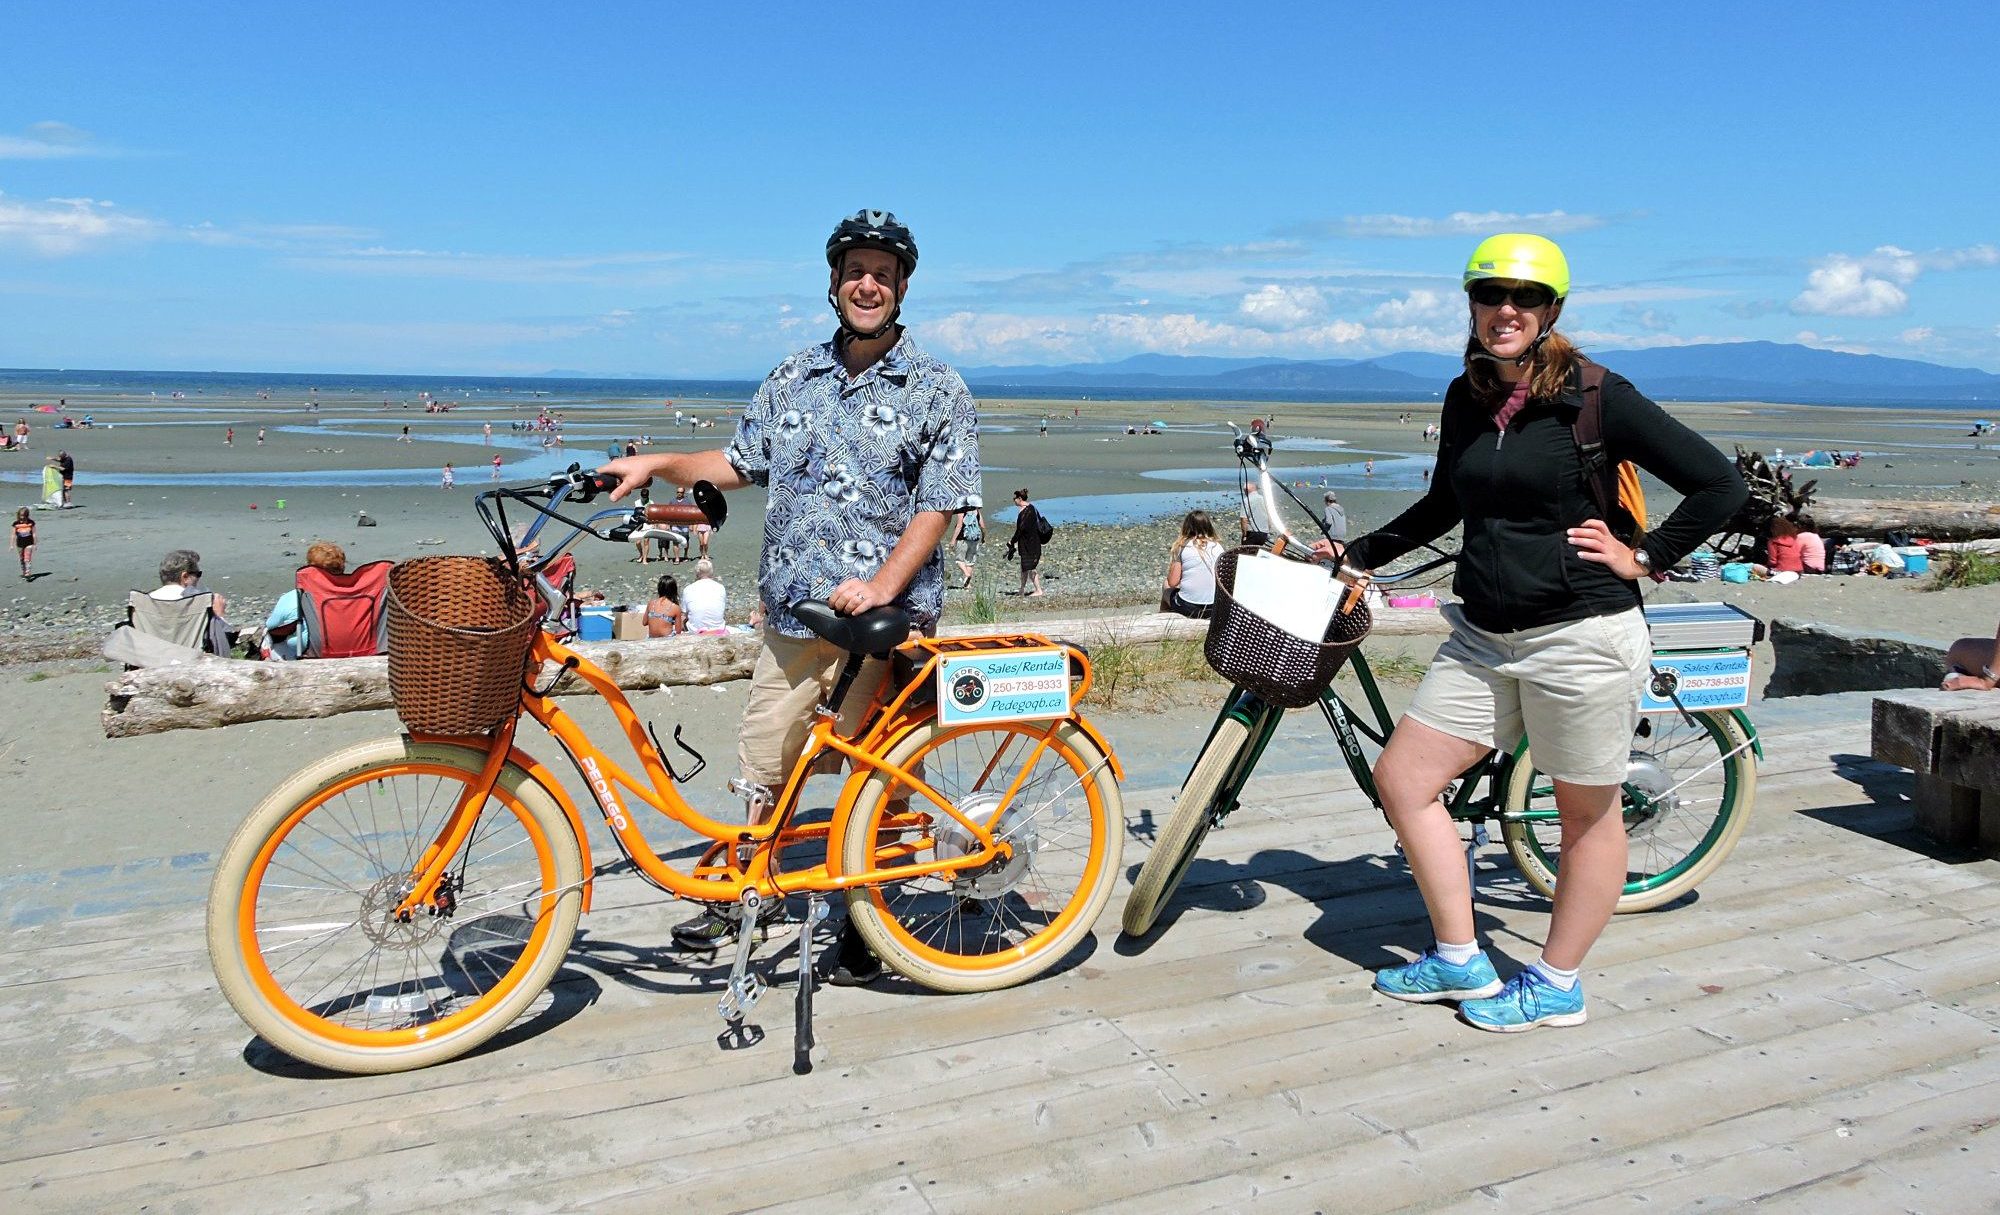 Qualicum Beach Electric Bike Tours, Qualicum Beach Bike Tours, Pedego Electric Bikes, Parksville Electric Bikes, Qualicum Beach activities, Qualicum Beach Vacations, Vancouver Island Tours, Vancouver Island Vacations, Traveling Islanders,